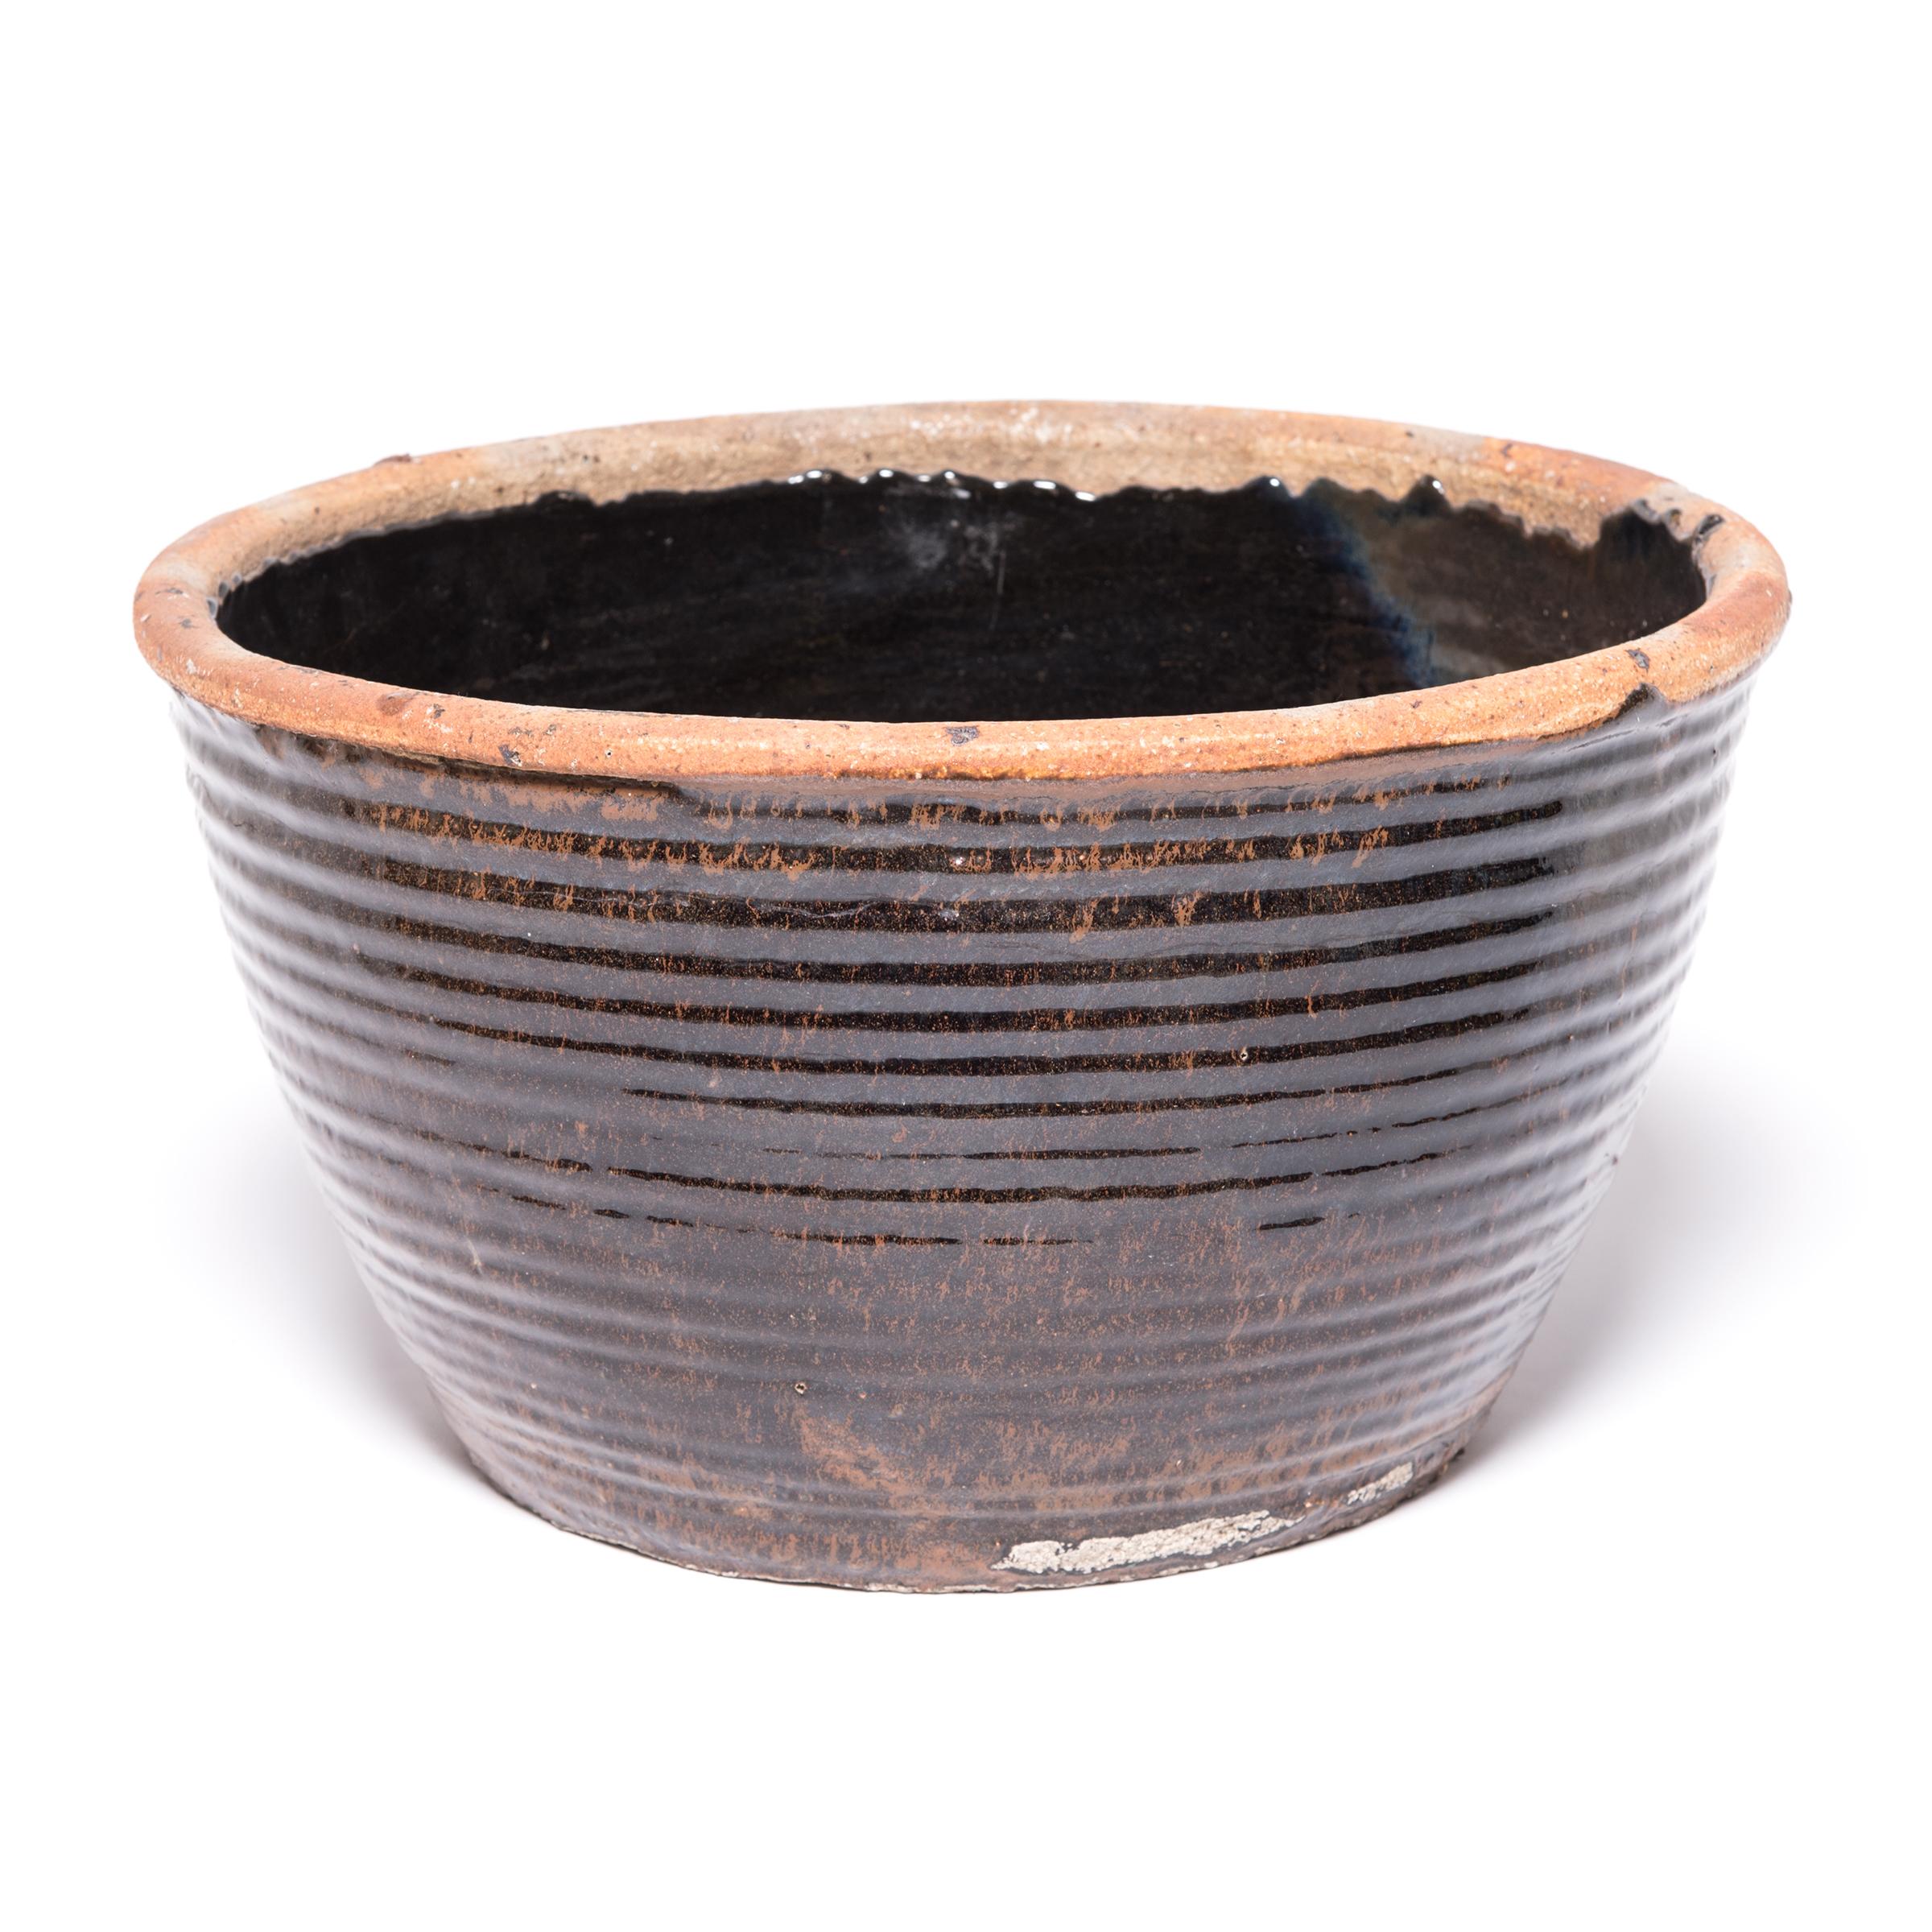 Utilisé à l'origine pour mariner les aliments, ce pot en céramique du milieu du XXe siècle est recouvert à l'intérieur et à l'extérieur d'une glaçure sombre. De subtiles stries suggèrent que le bol a été façonné en enroulant des cordes d'argile